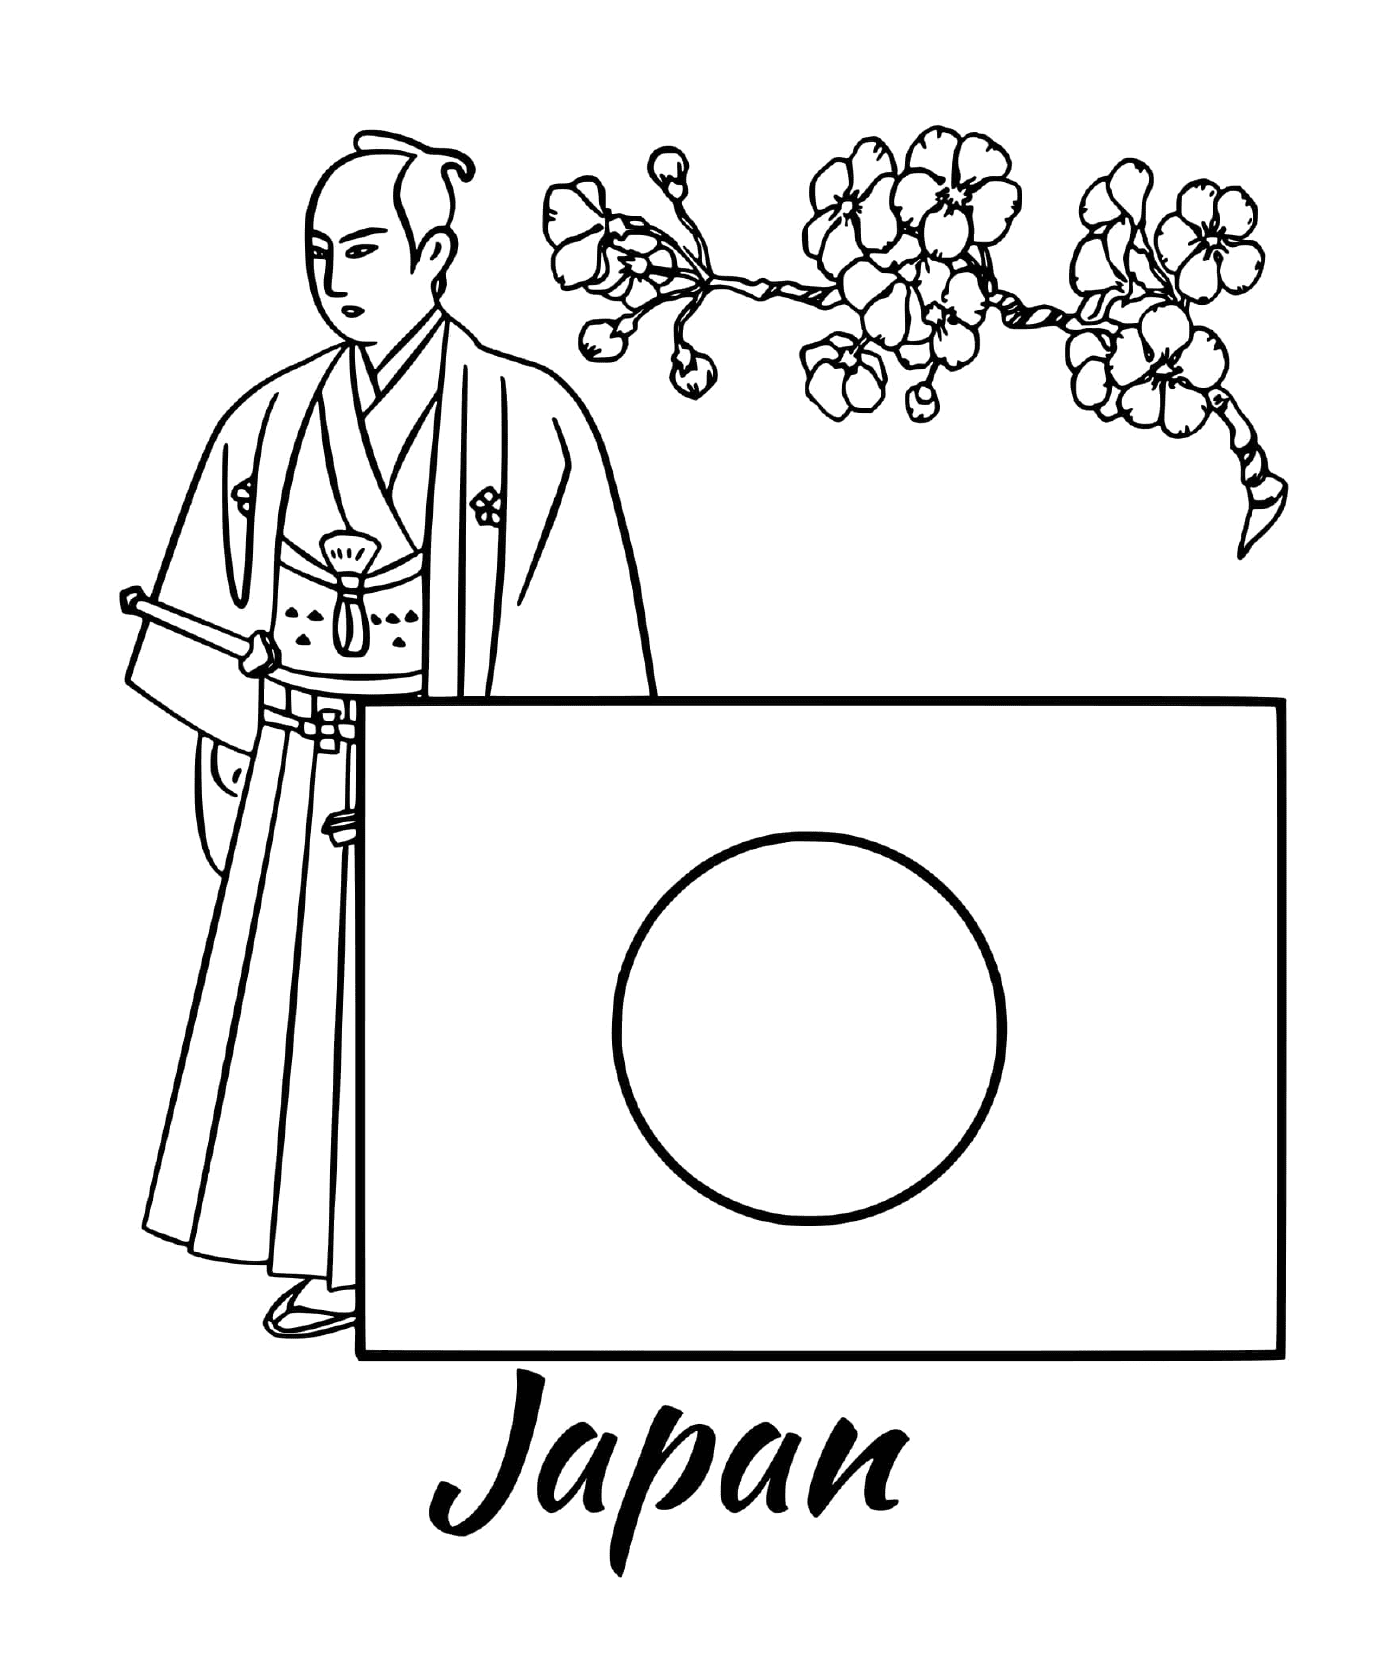   Drapeau du Japon avec un samouraï 